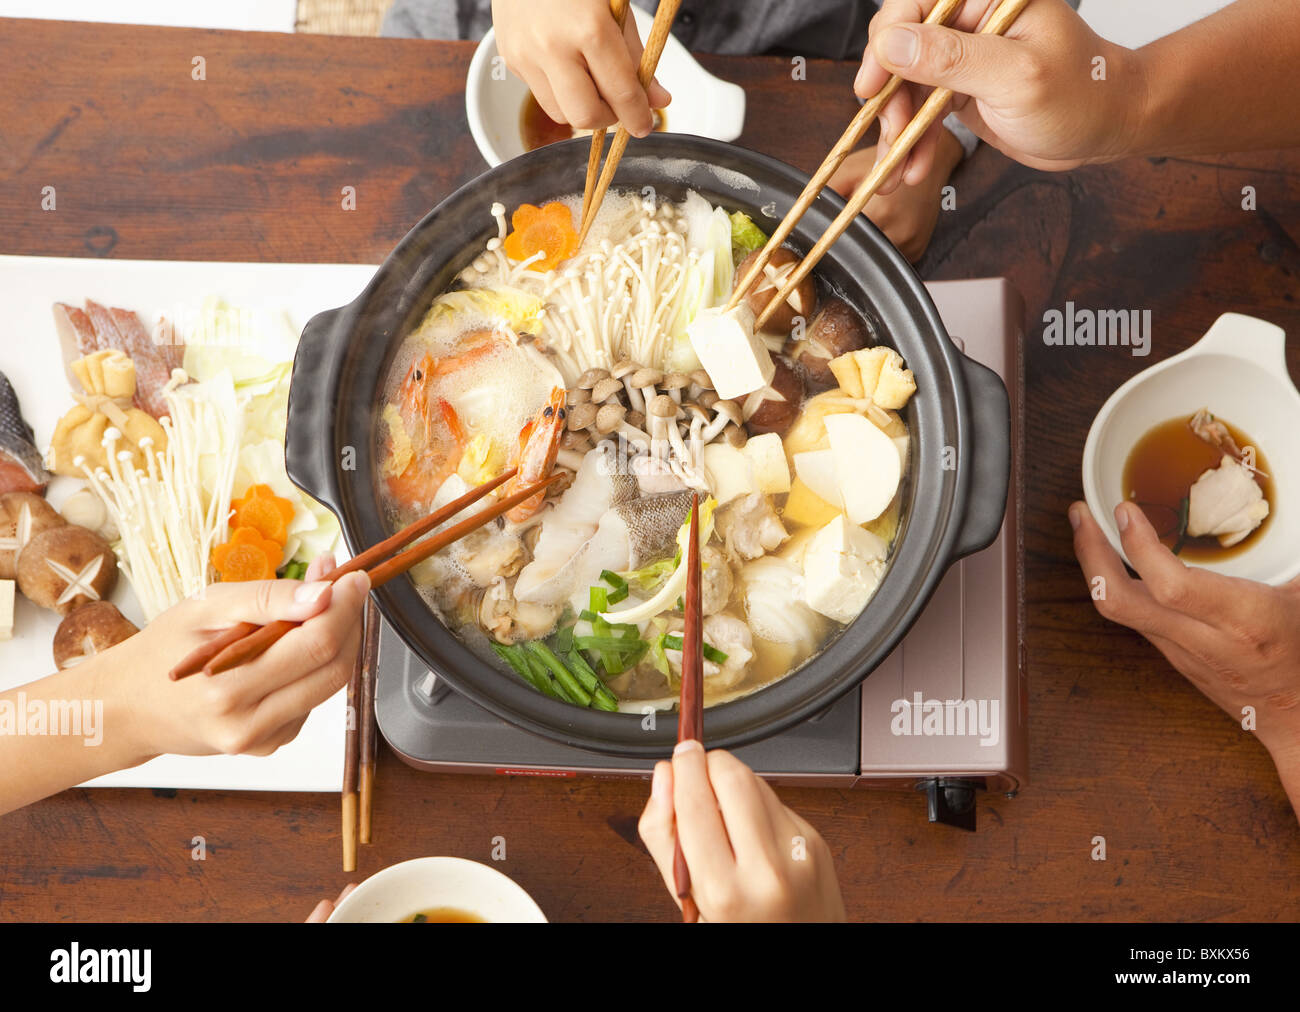 Eltern und Kinder essen japanische nabe Stockfotografie - Alamy